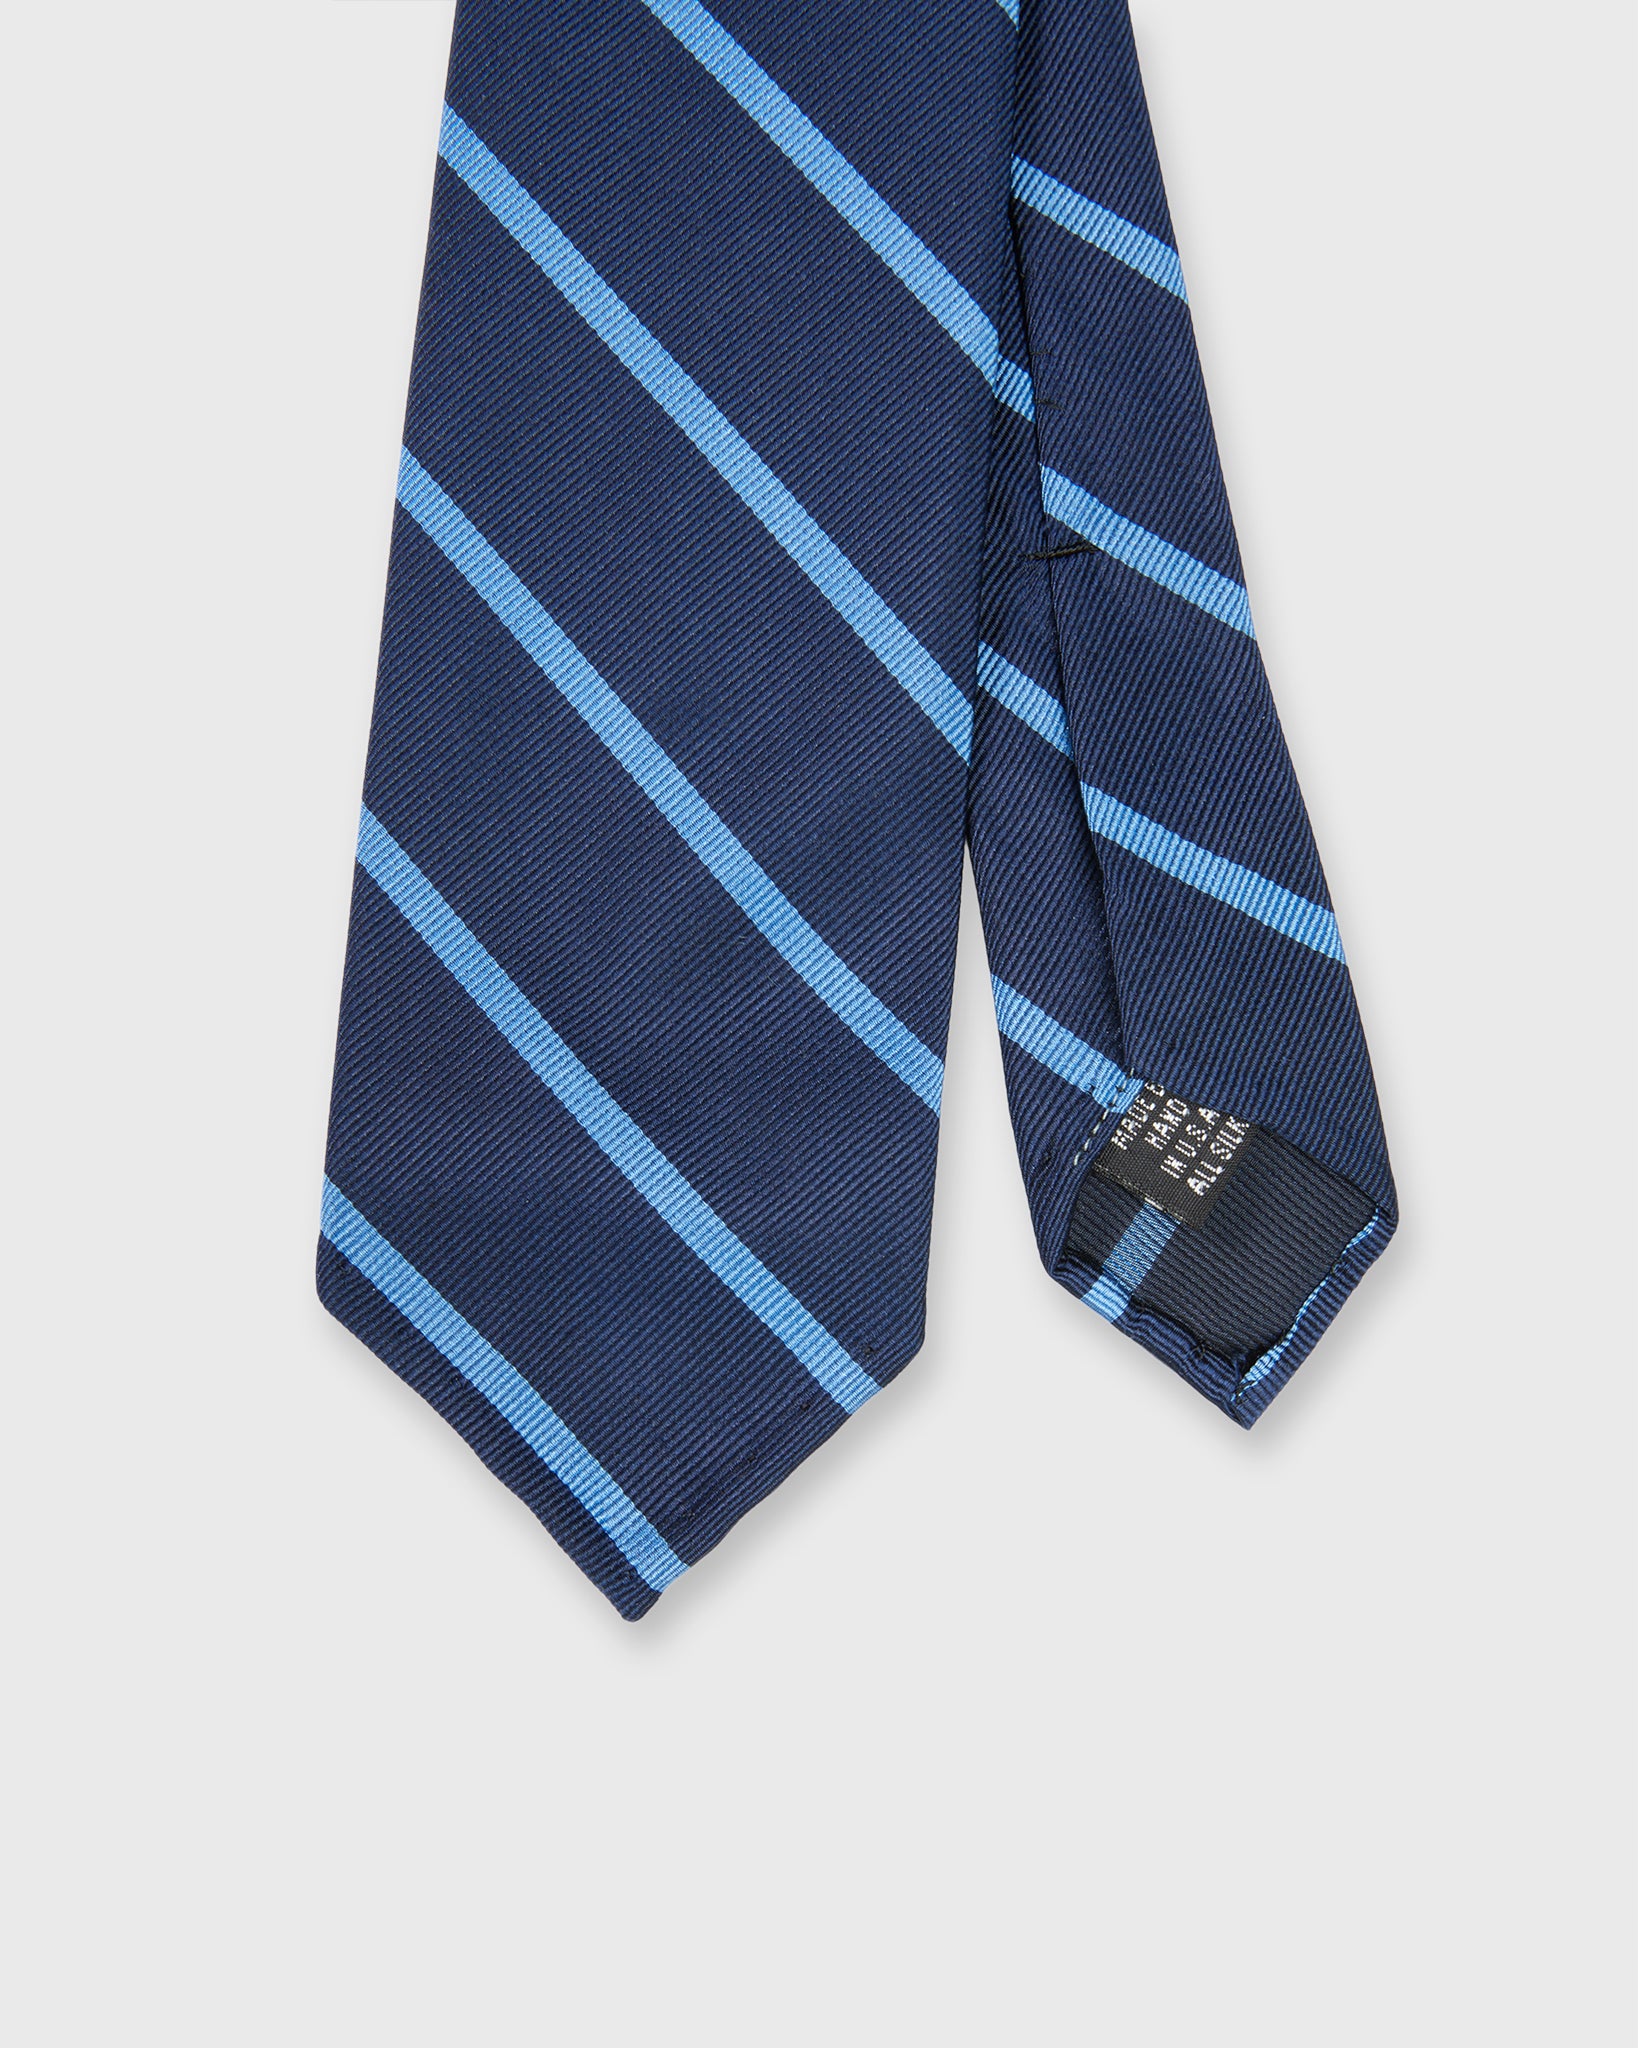 Silk Woven Tie in Navy/Dusty Blue Stripe